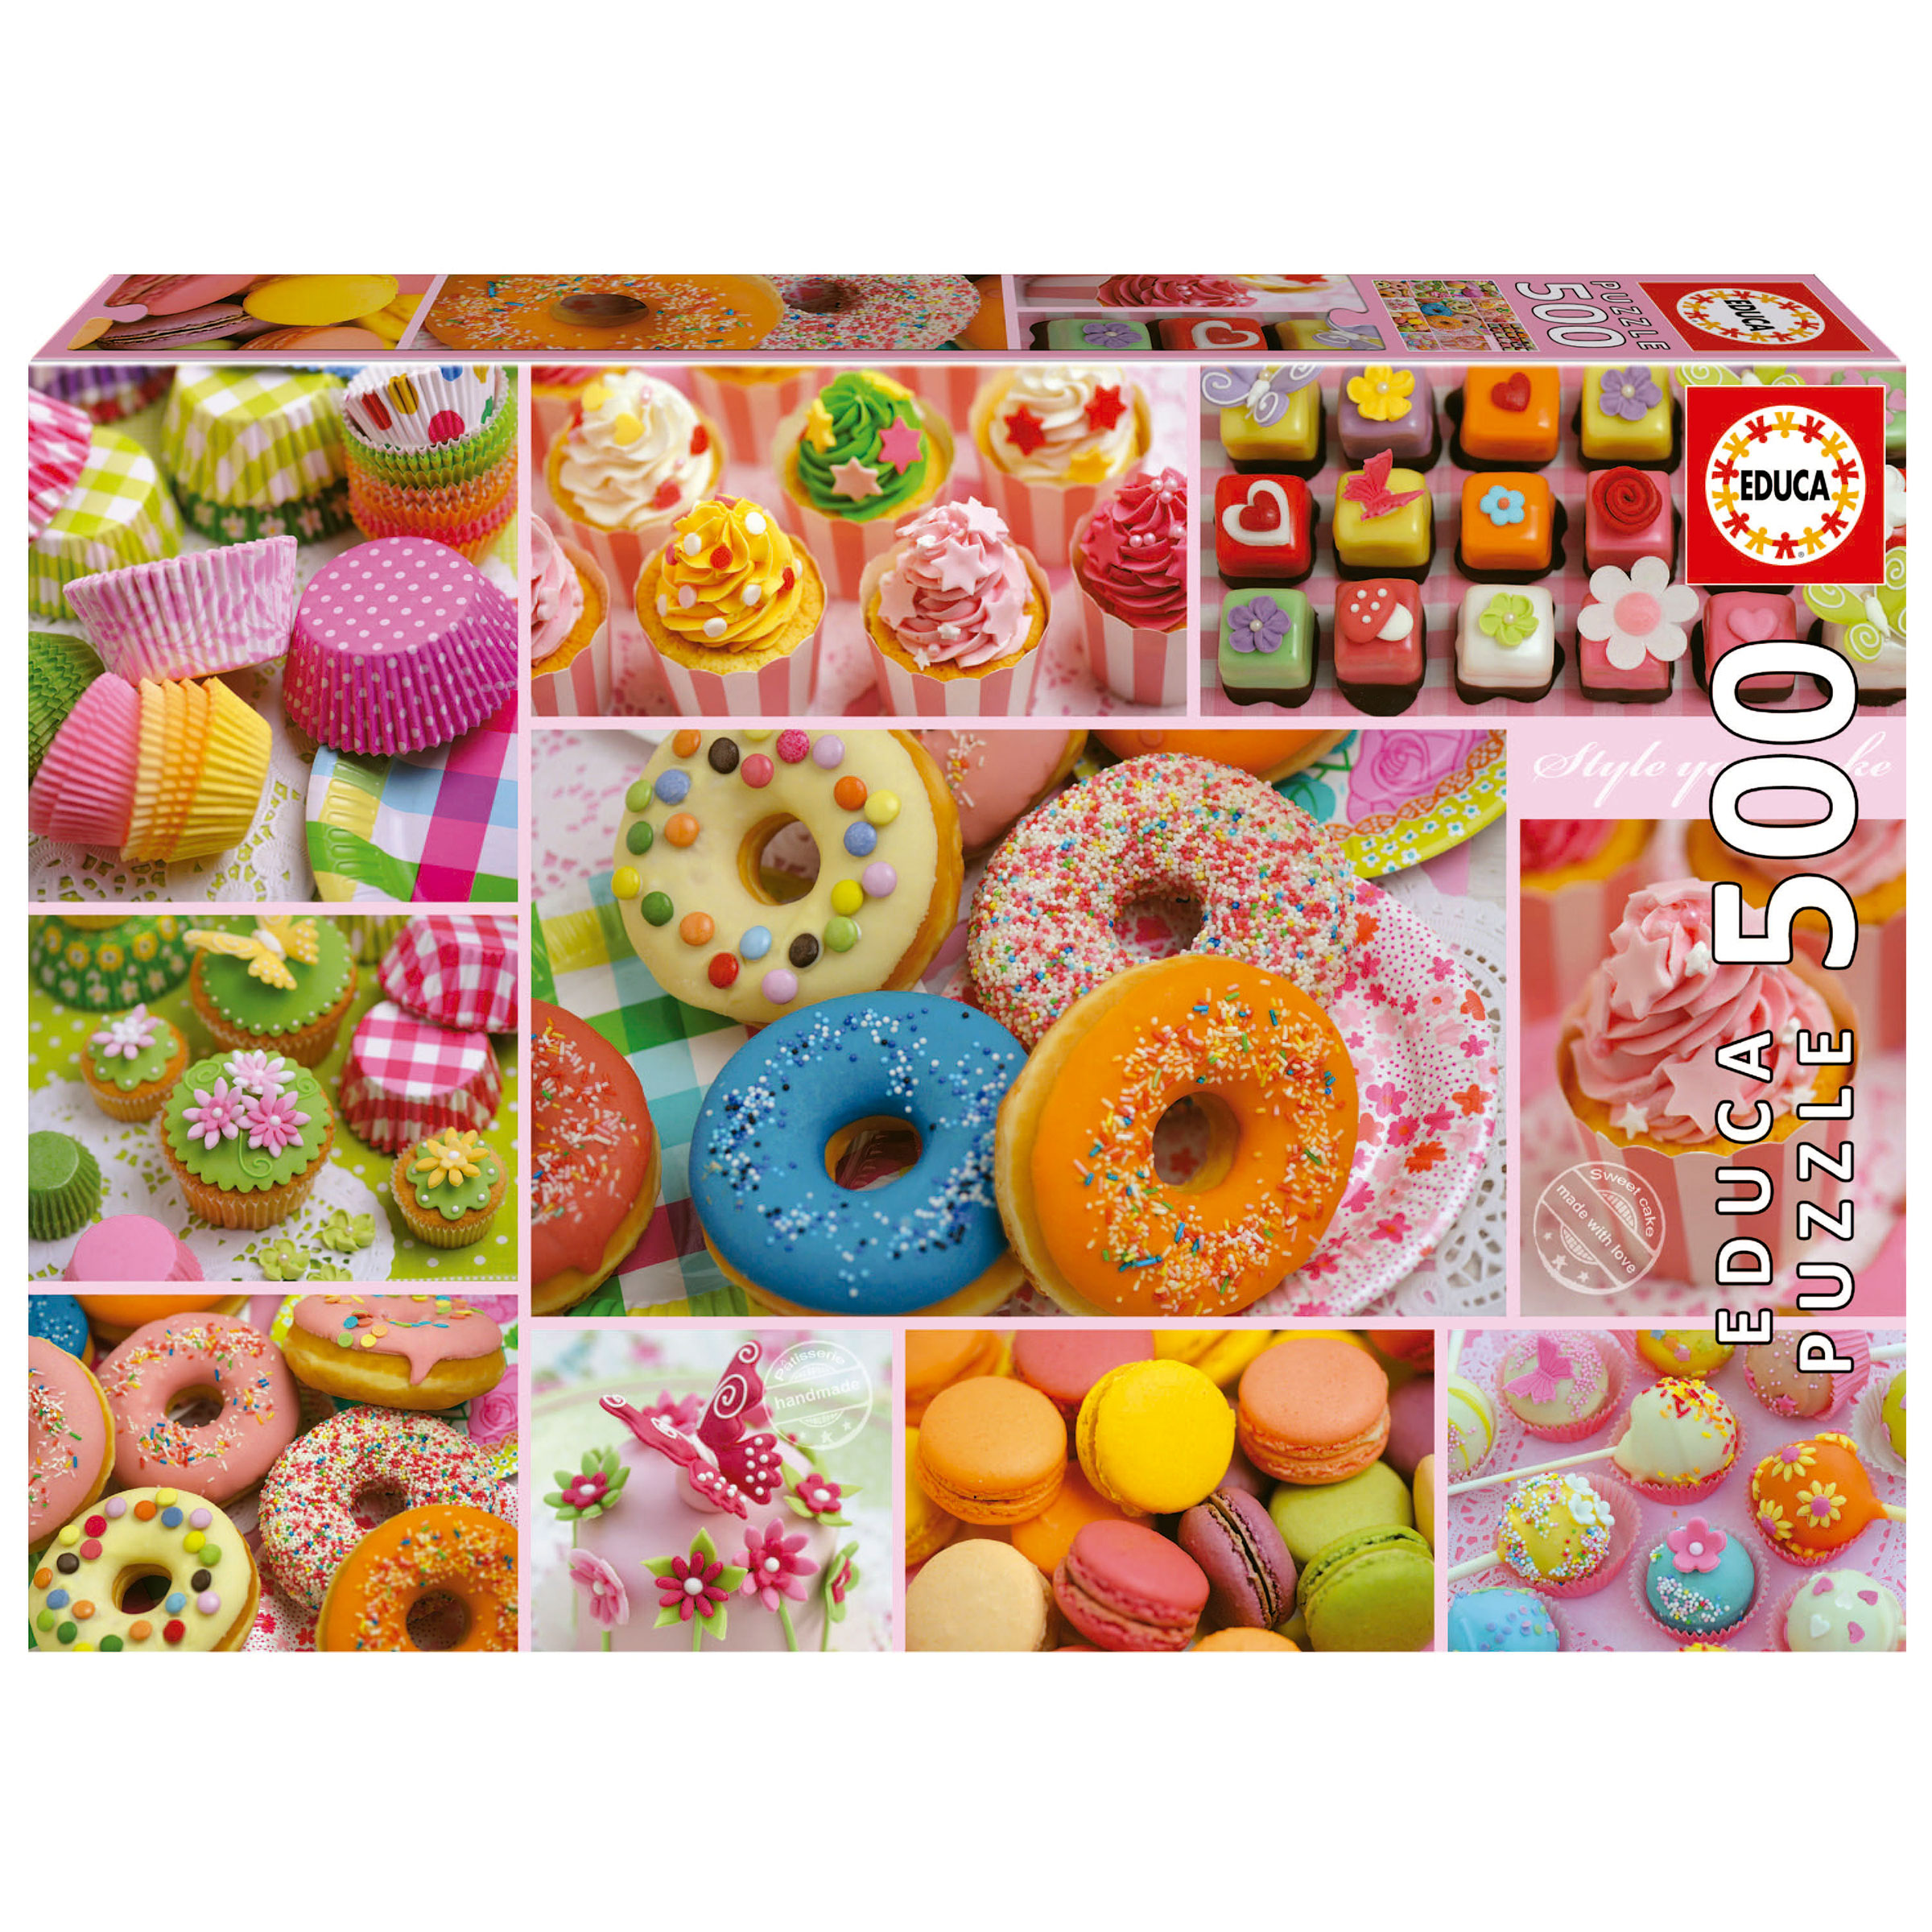 500 Collage de dulces